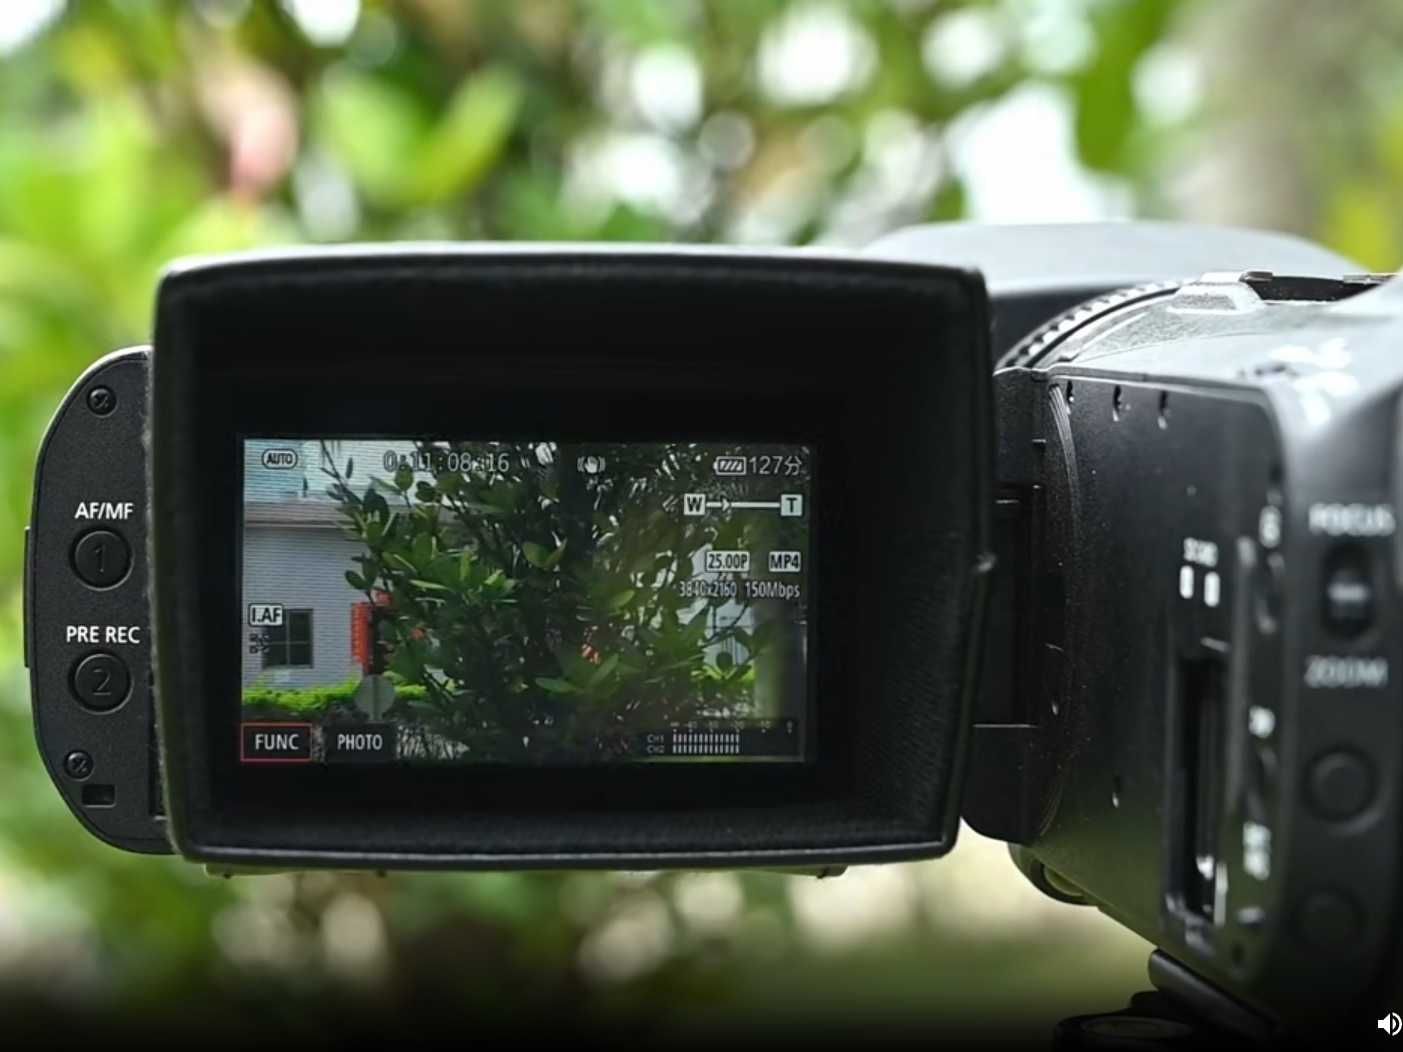 Солнцезащитный козырек JJC, для 3,5-дюймового ЖК-дисплея видеокамер